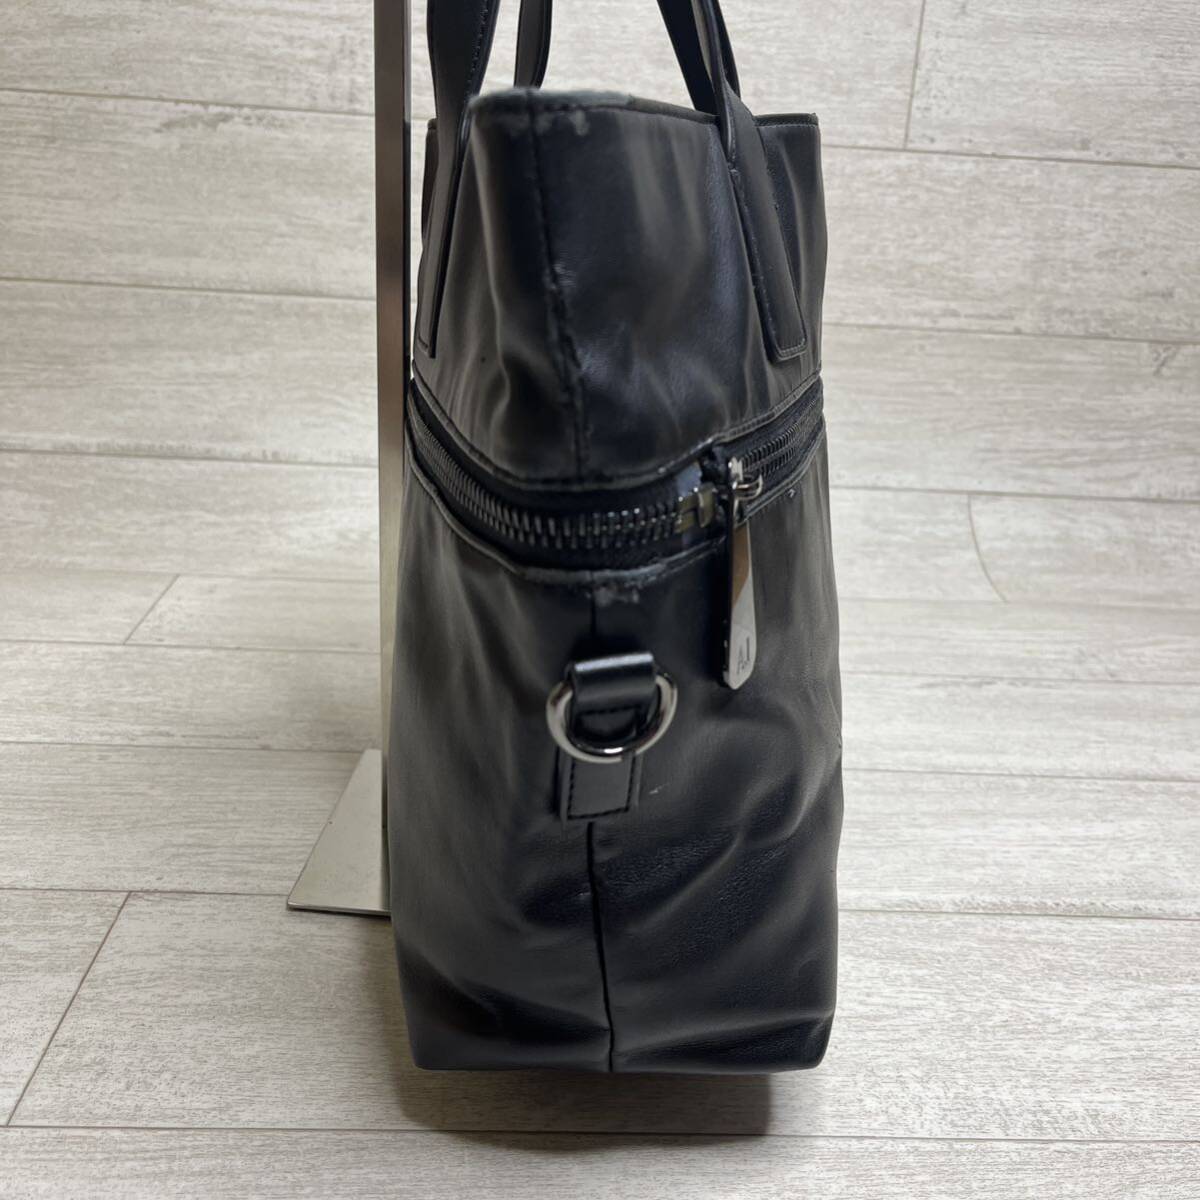 1 jpy ~[ hard-to-find ]ARMANI JEANS Armani Jeans men's tote bag shoulder bag A4 2way business leather black black 